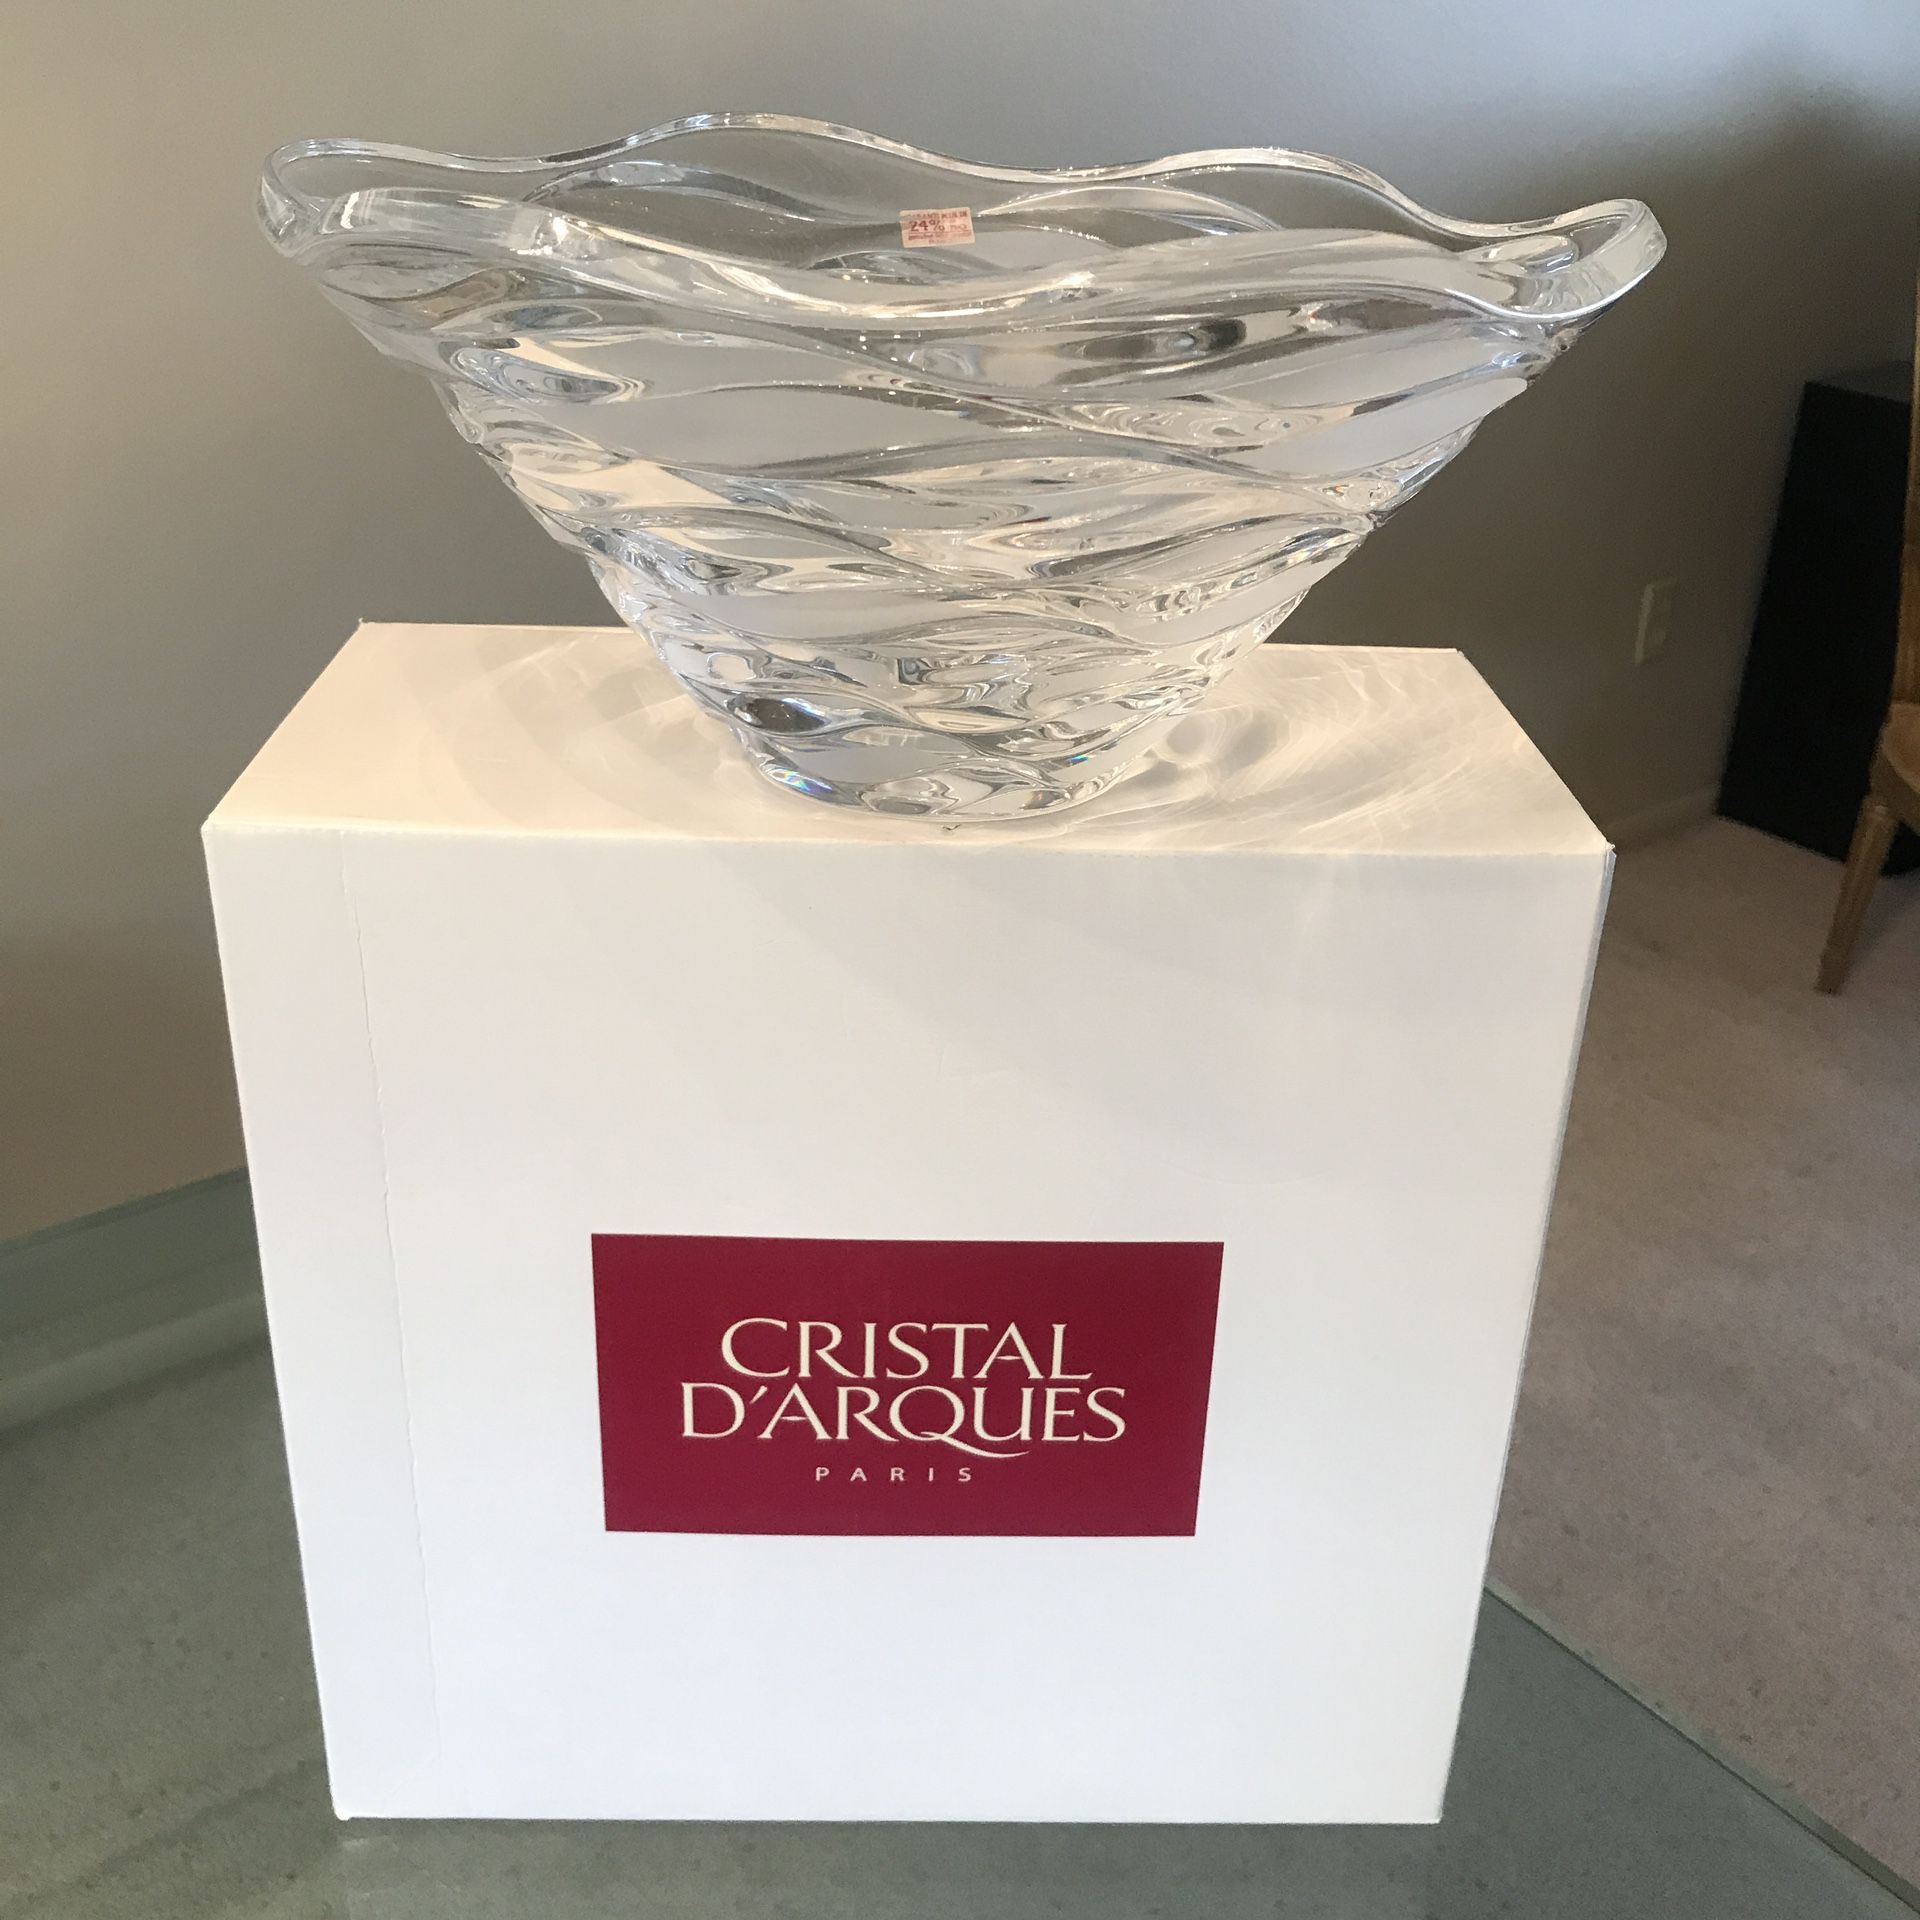 BNIB New Cristal D’Arques Paris France Large Crescendo Lead Wavy Cut Crystal Bowl Centerpiece